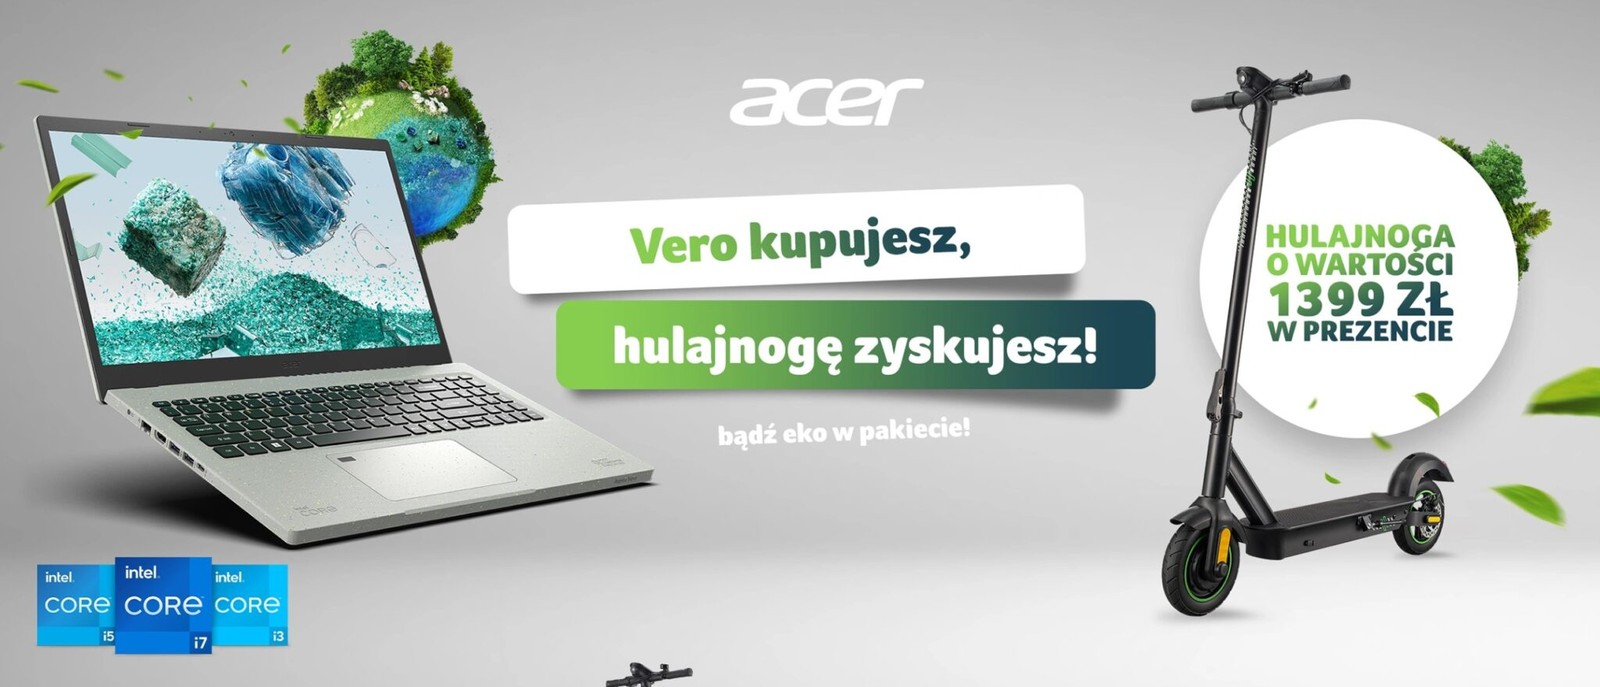 Acer szaleje z nową promocją. Kup laptopa i odbierz hulajnogę elektryczną w prezencie